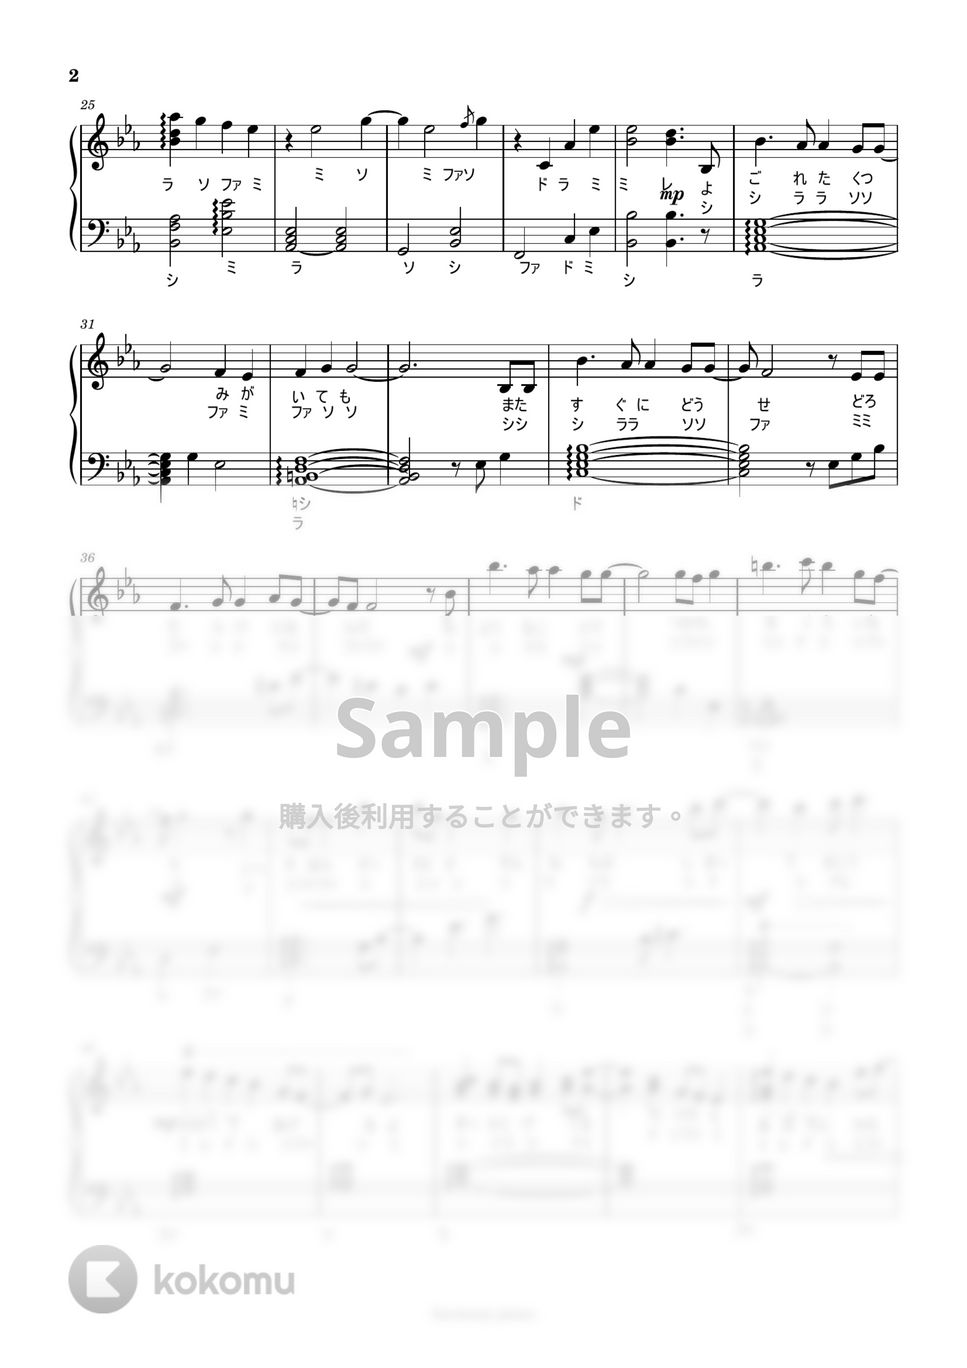 SixTONES 歌詞付 - ドレミ付初級「わたし」 by harmony piano